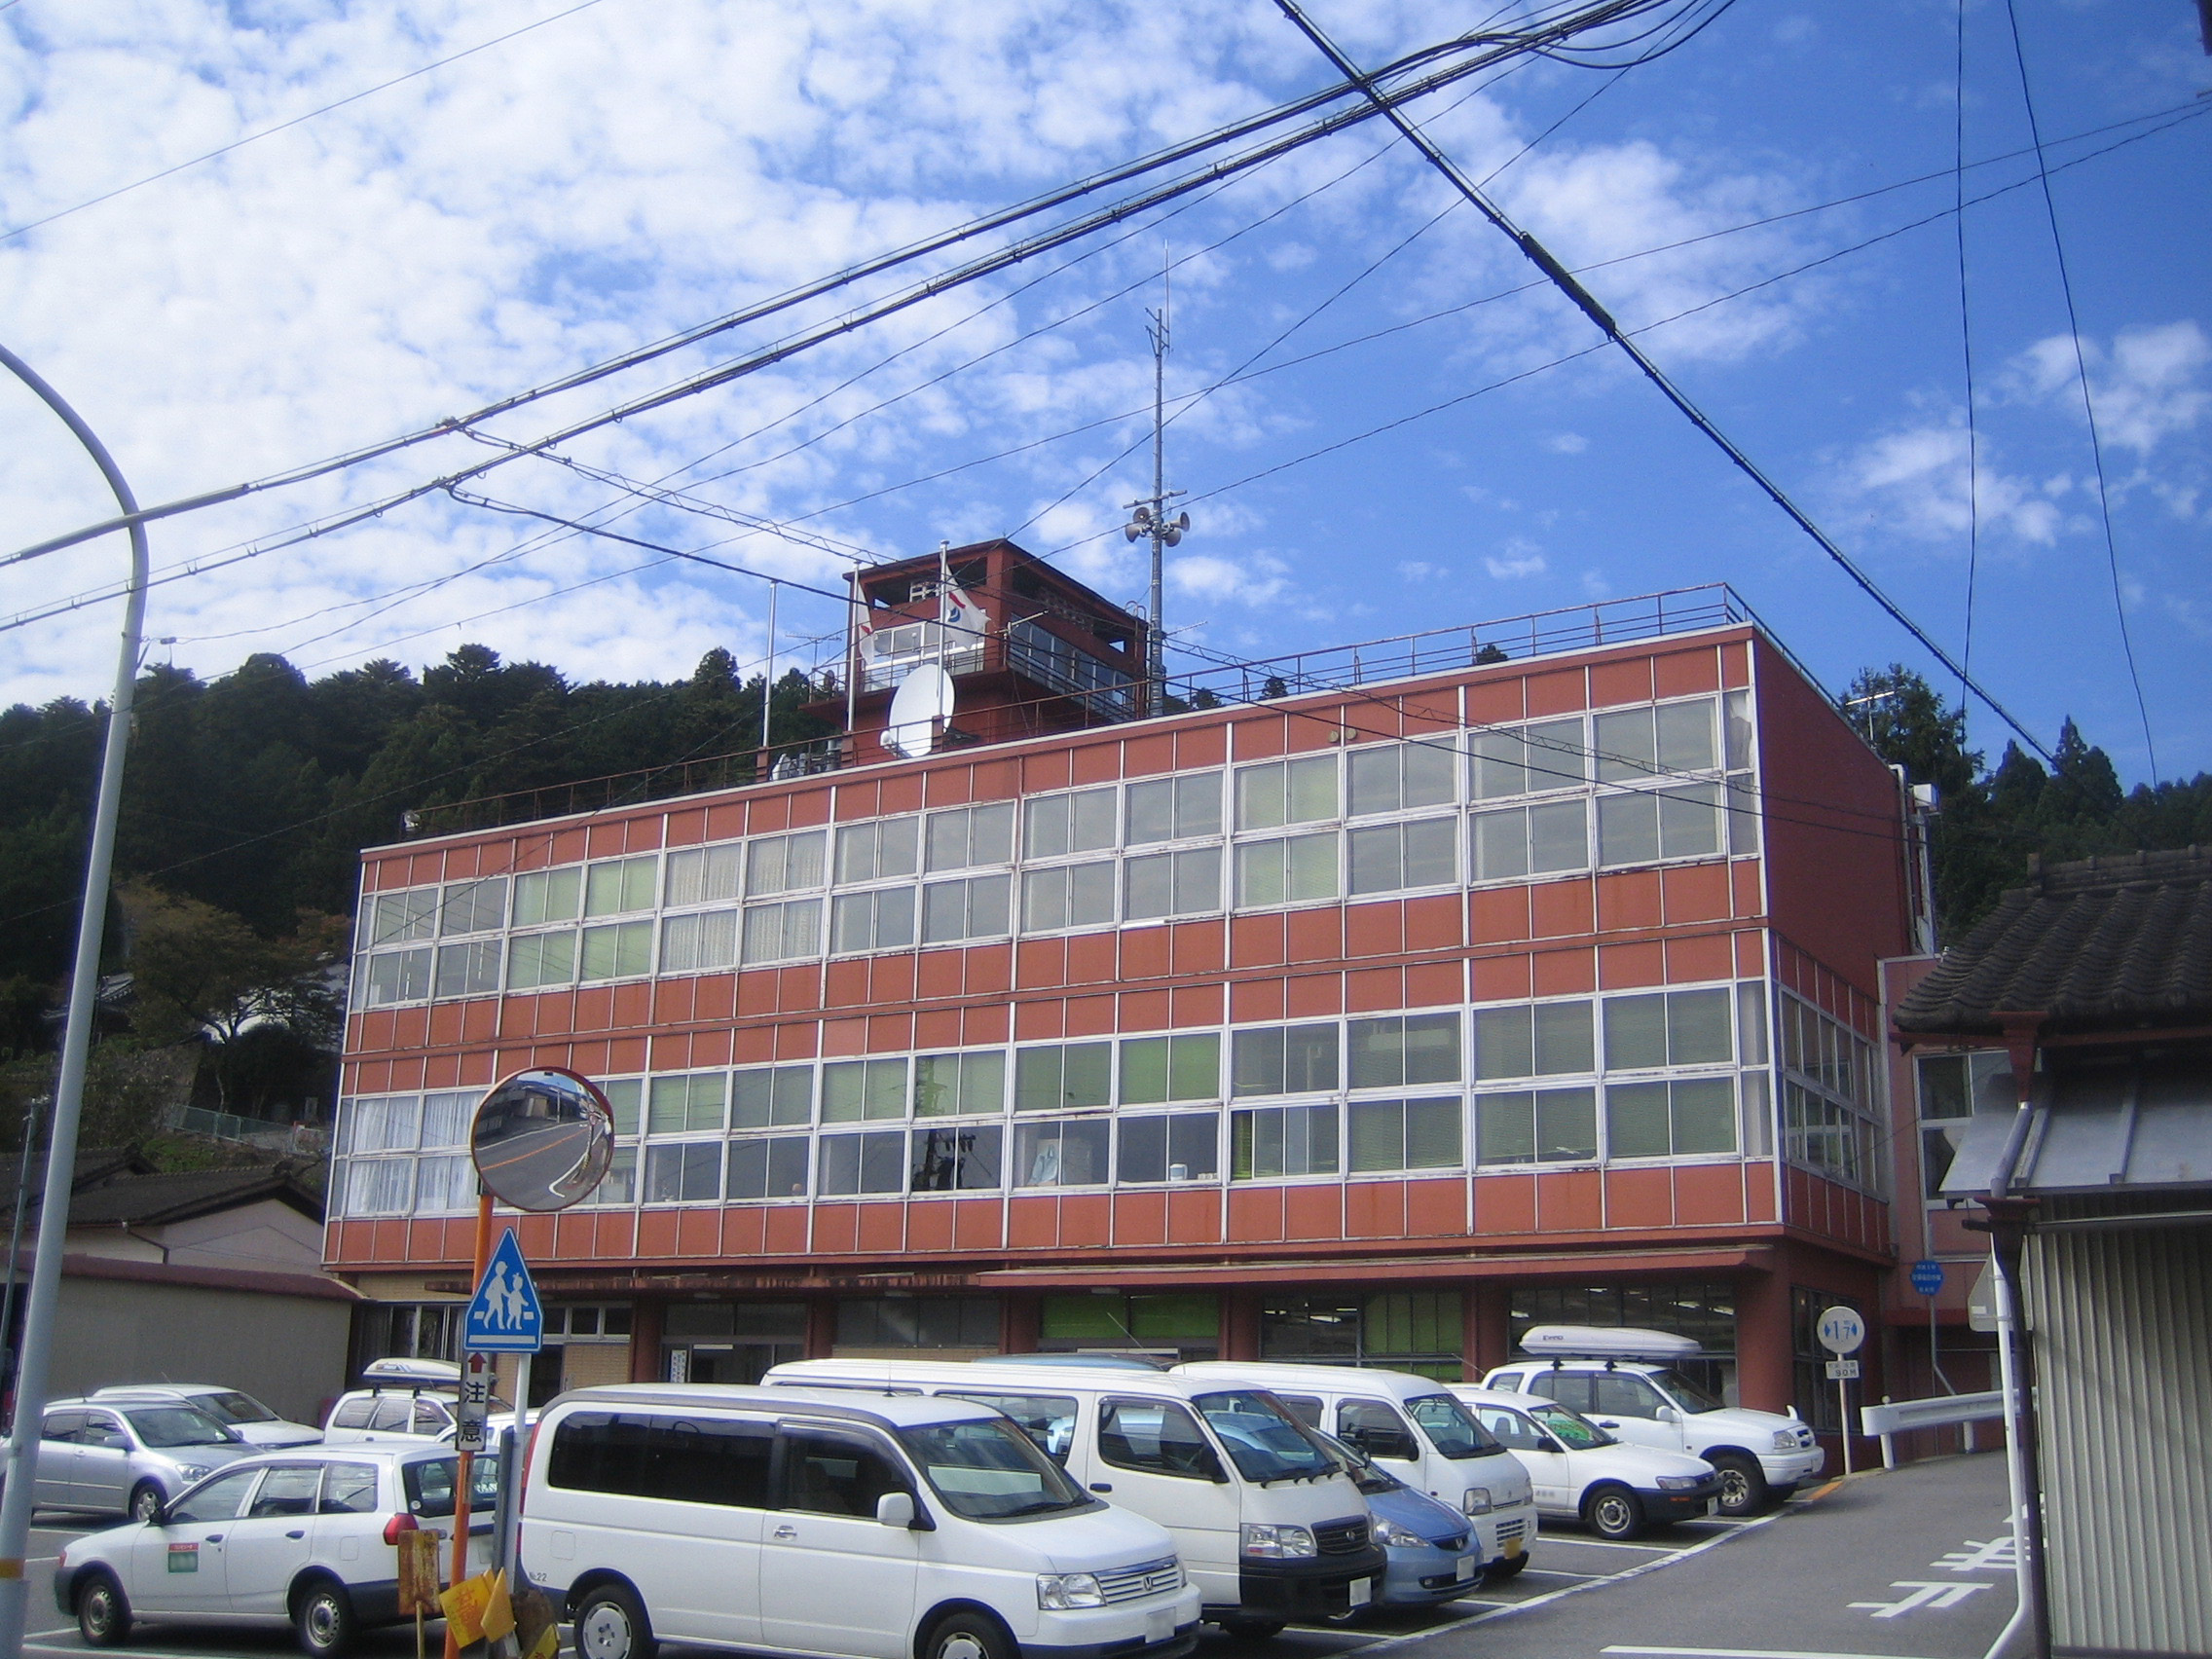 Shitara, Aichi - Wikipedia